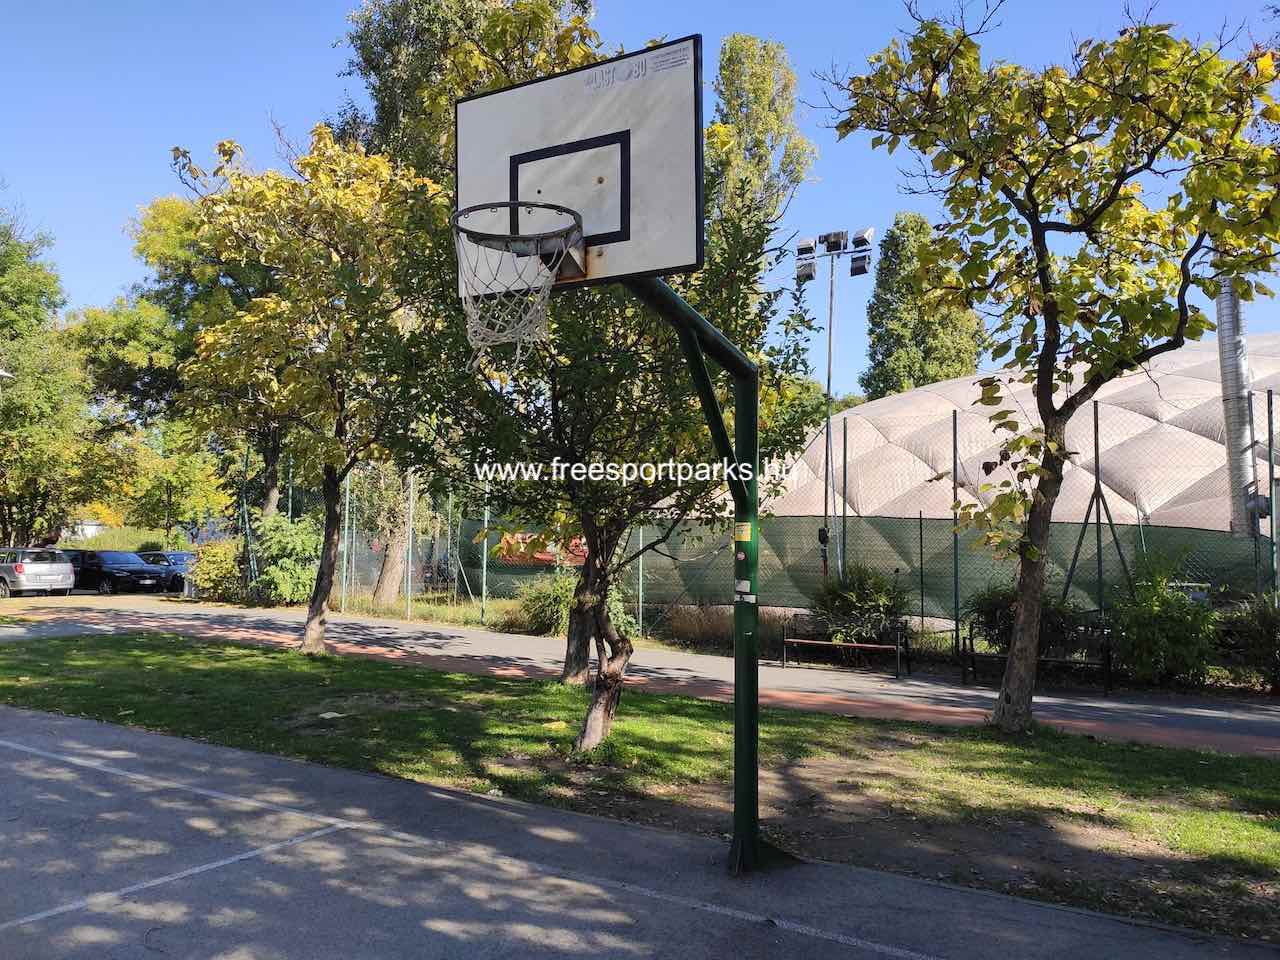 streetball pálya kosárpalánkja, Bikás domb - Free Sport Parks térkép